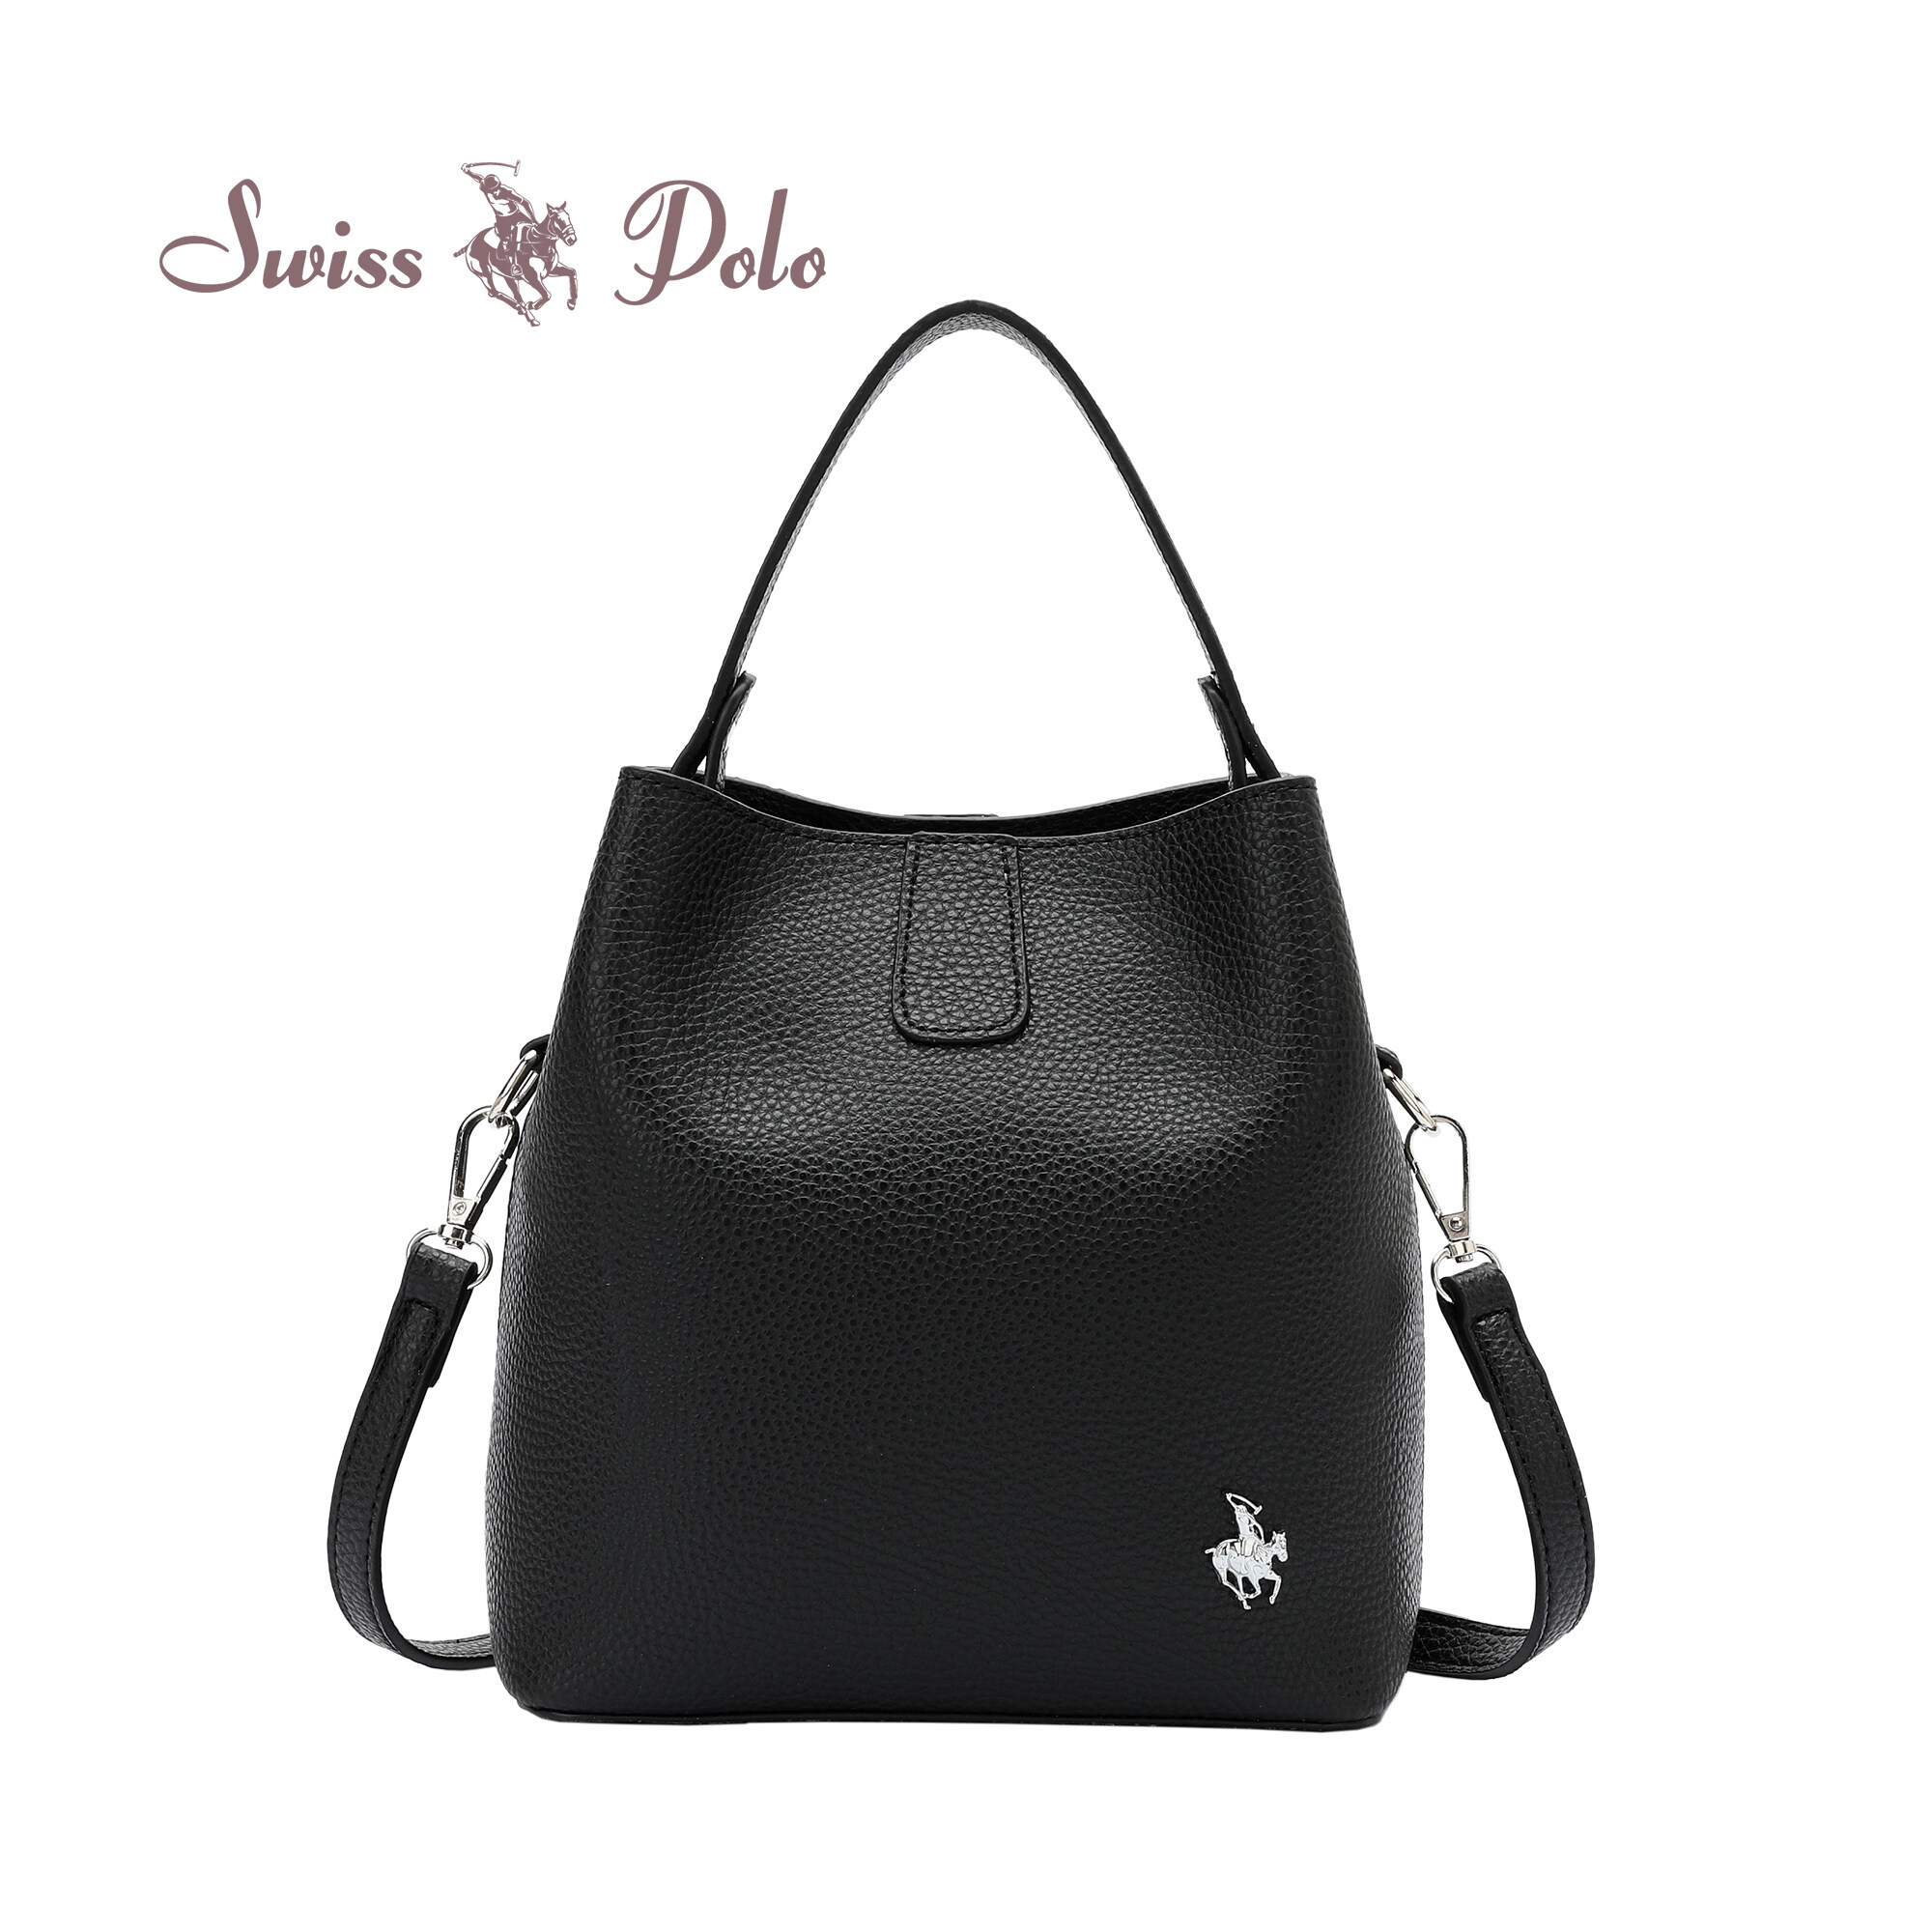 SWISS POLO Ladies Top Handle Sling Bag HDW 342-1 BLACK